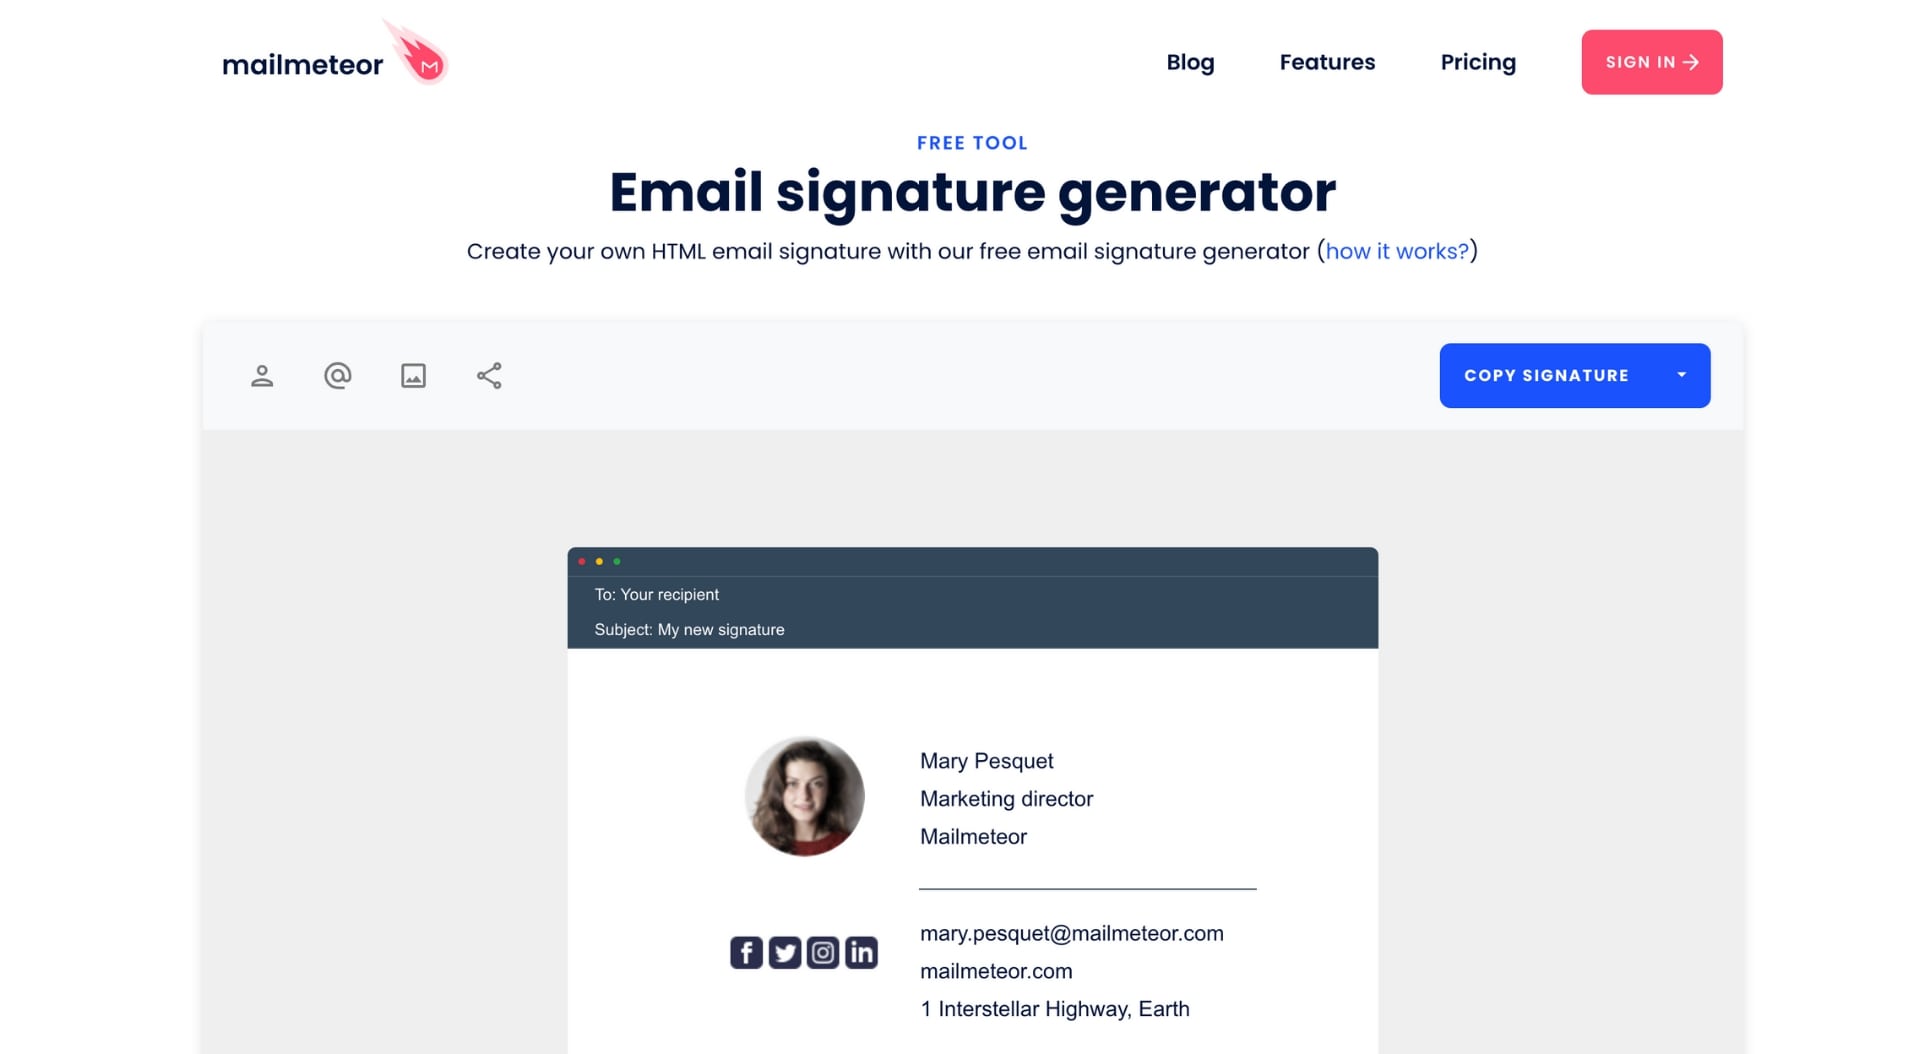 Email signature generator